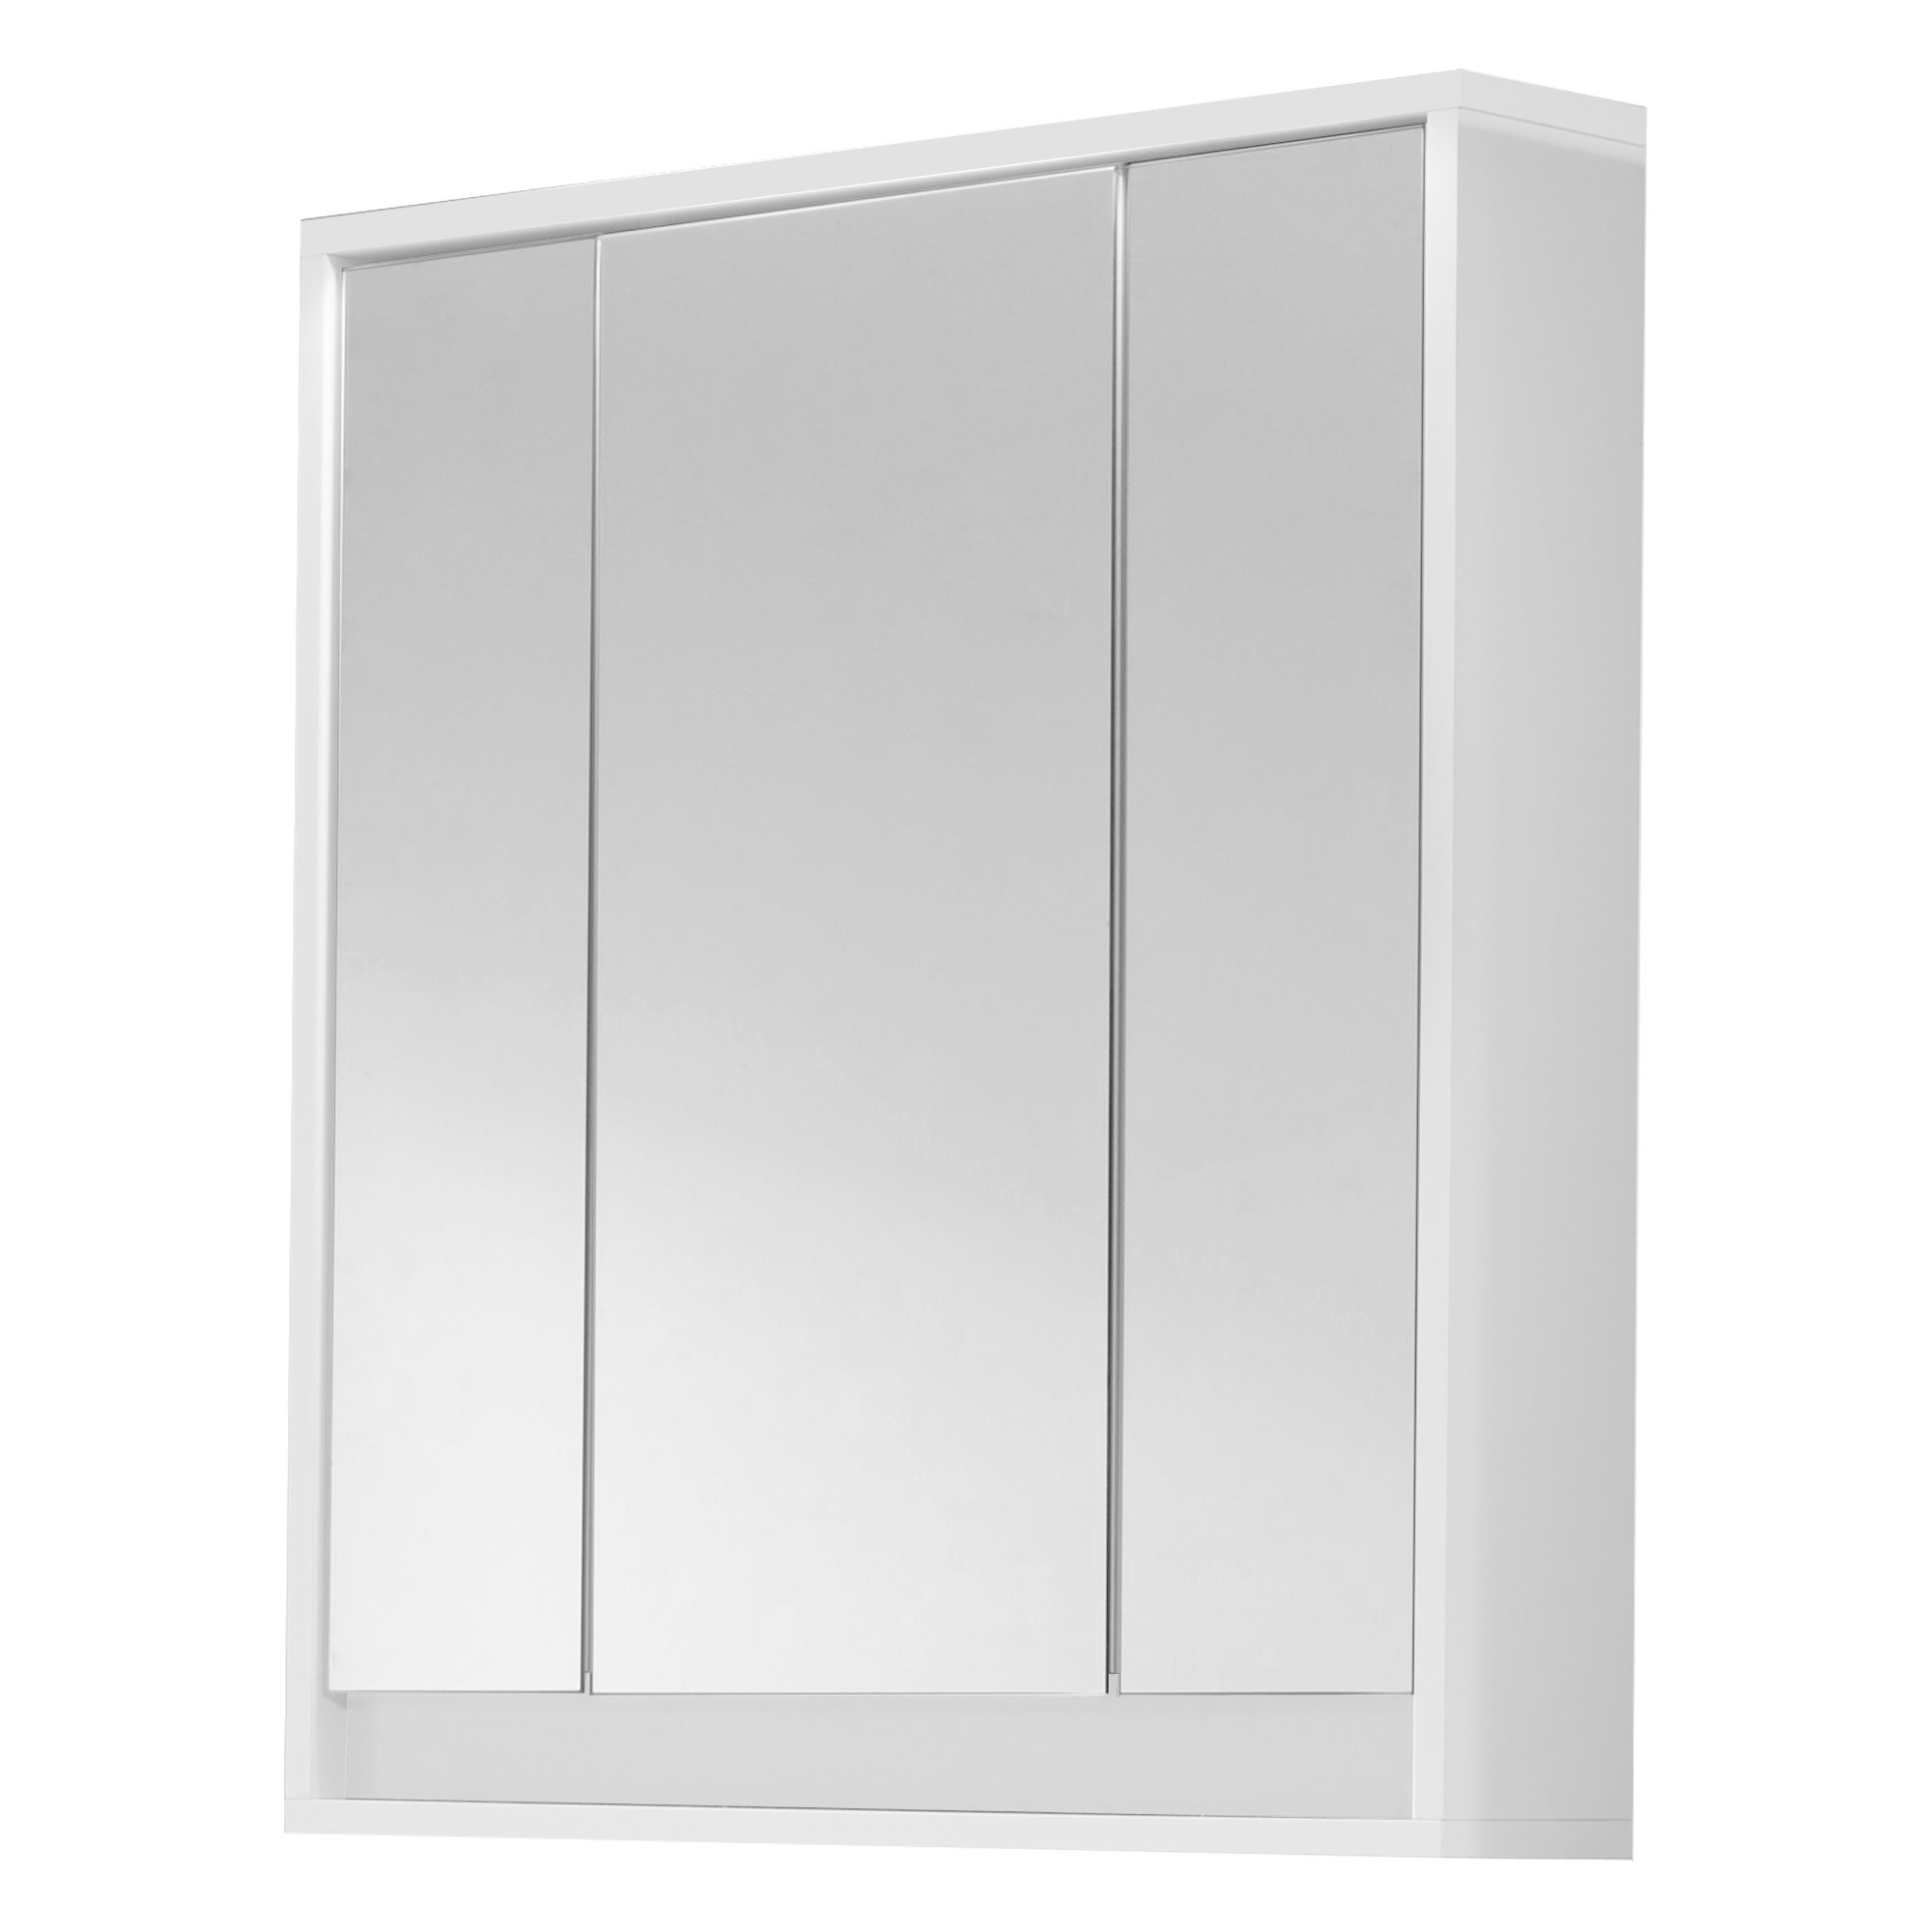 trendteam smart living - Spiegelschrank Spiegel - Badezimmer - Sol - Aufbaumaß (BxHxT) 67 x 73 x 18 cm - Farbe Weiß Hochglanz - 163540503